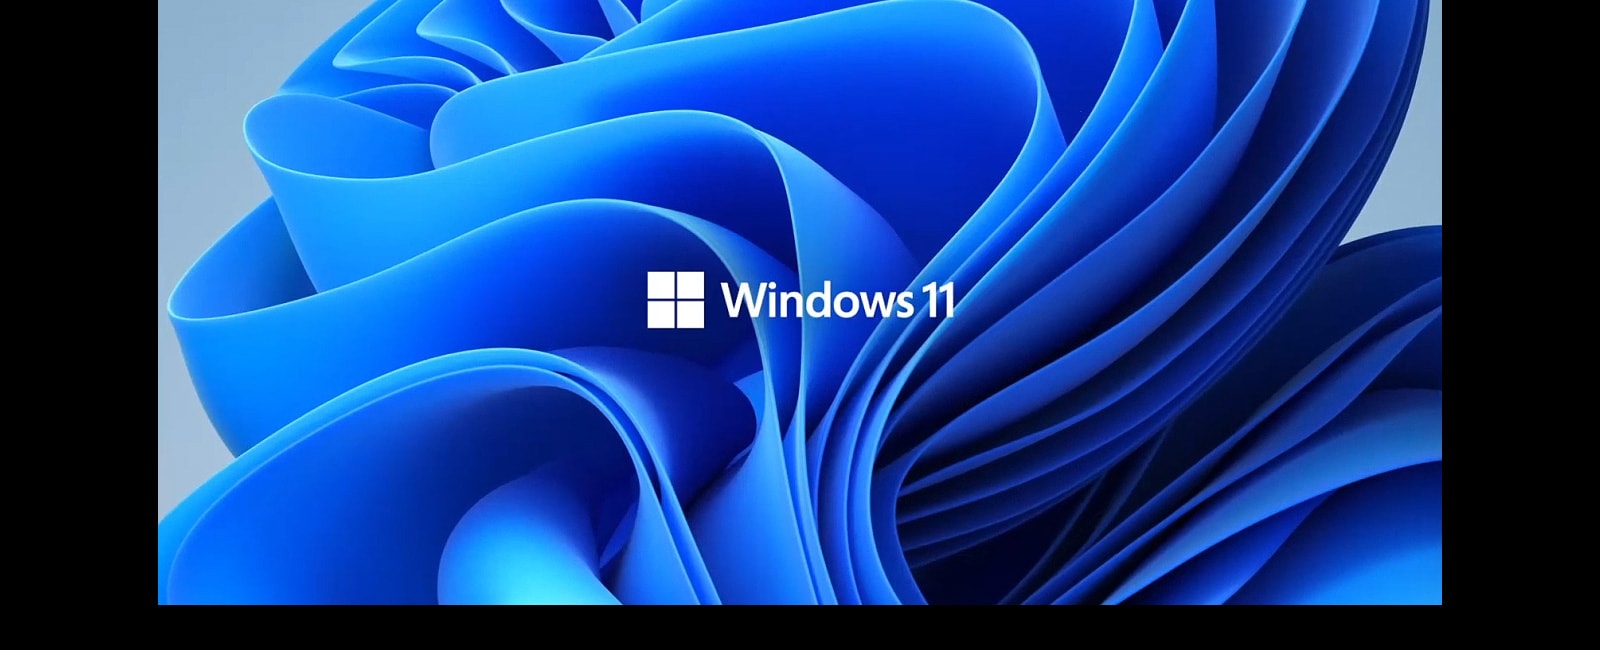 Het toont het Windows11 logo en de achtergrondafbeelding.